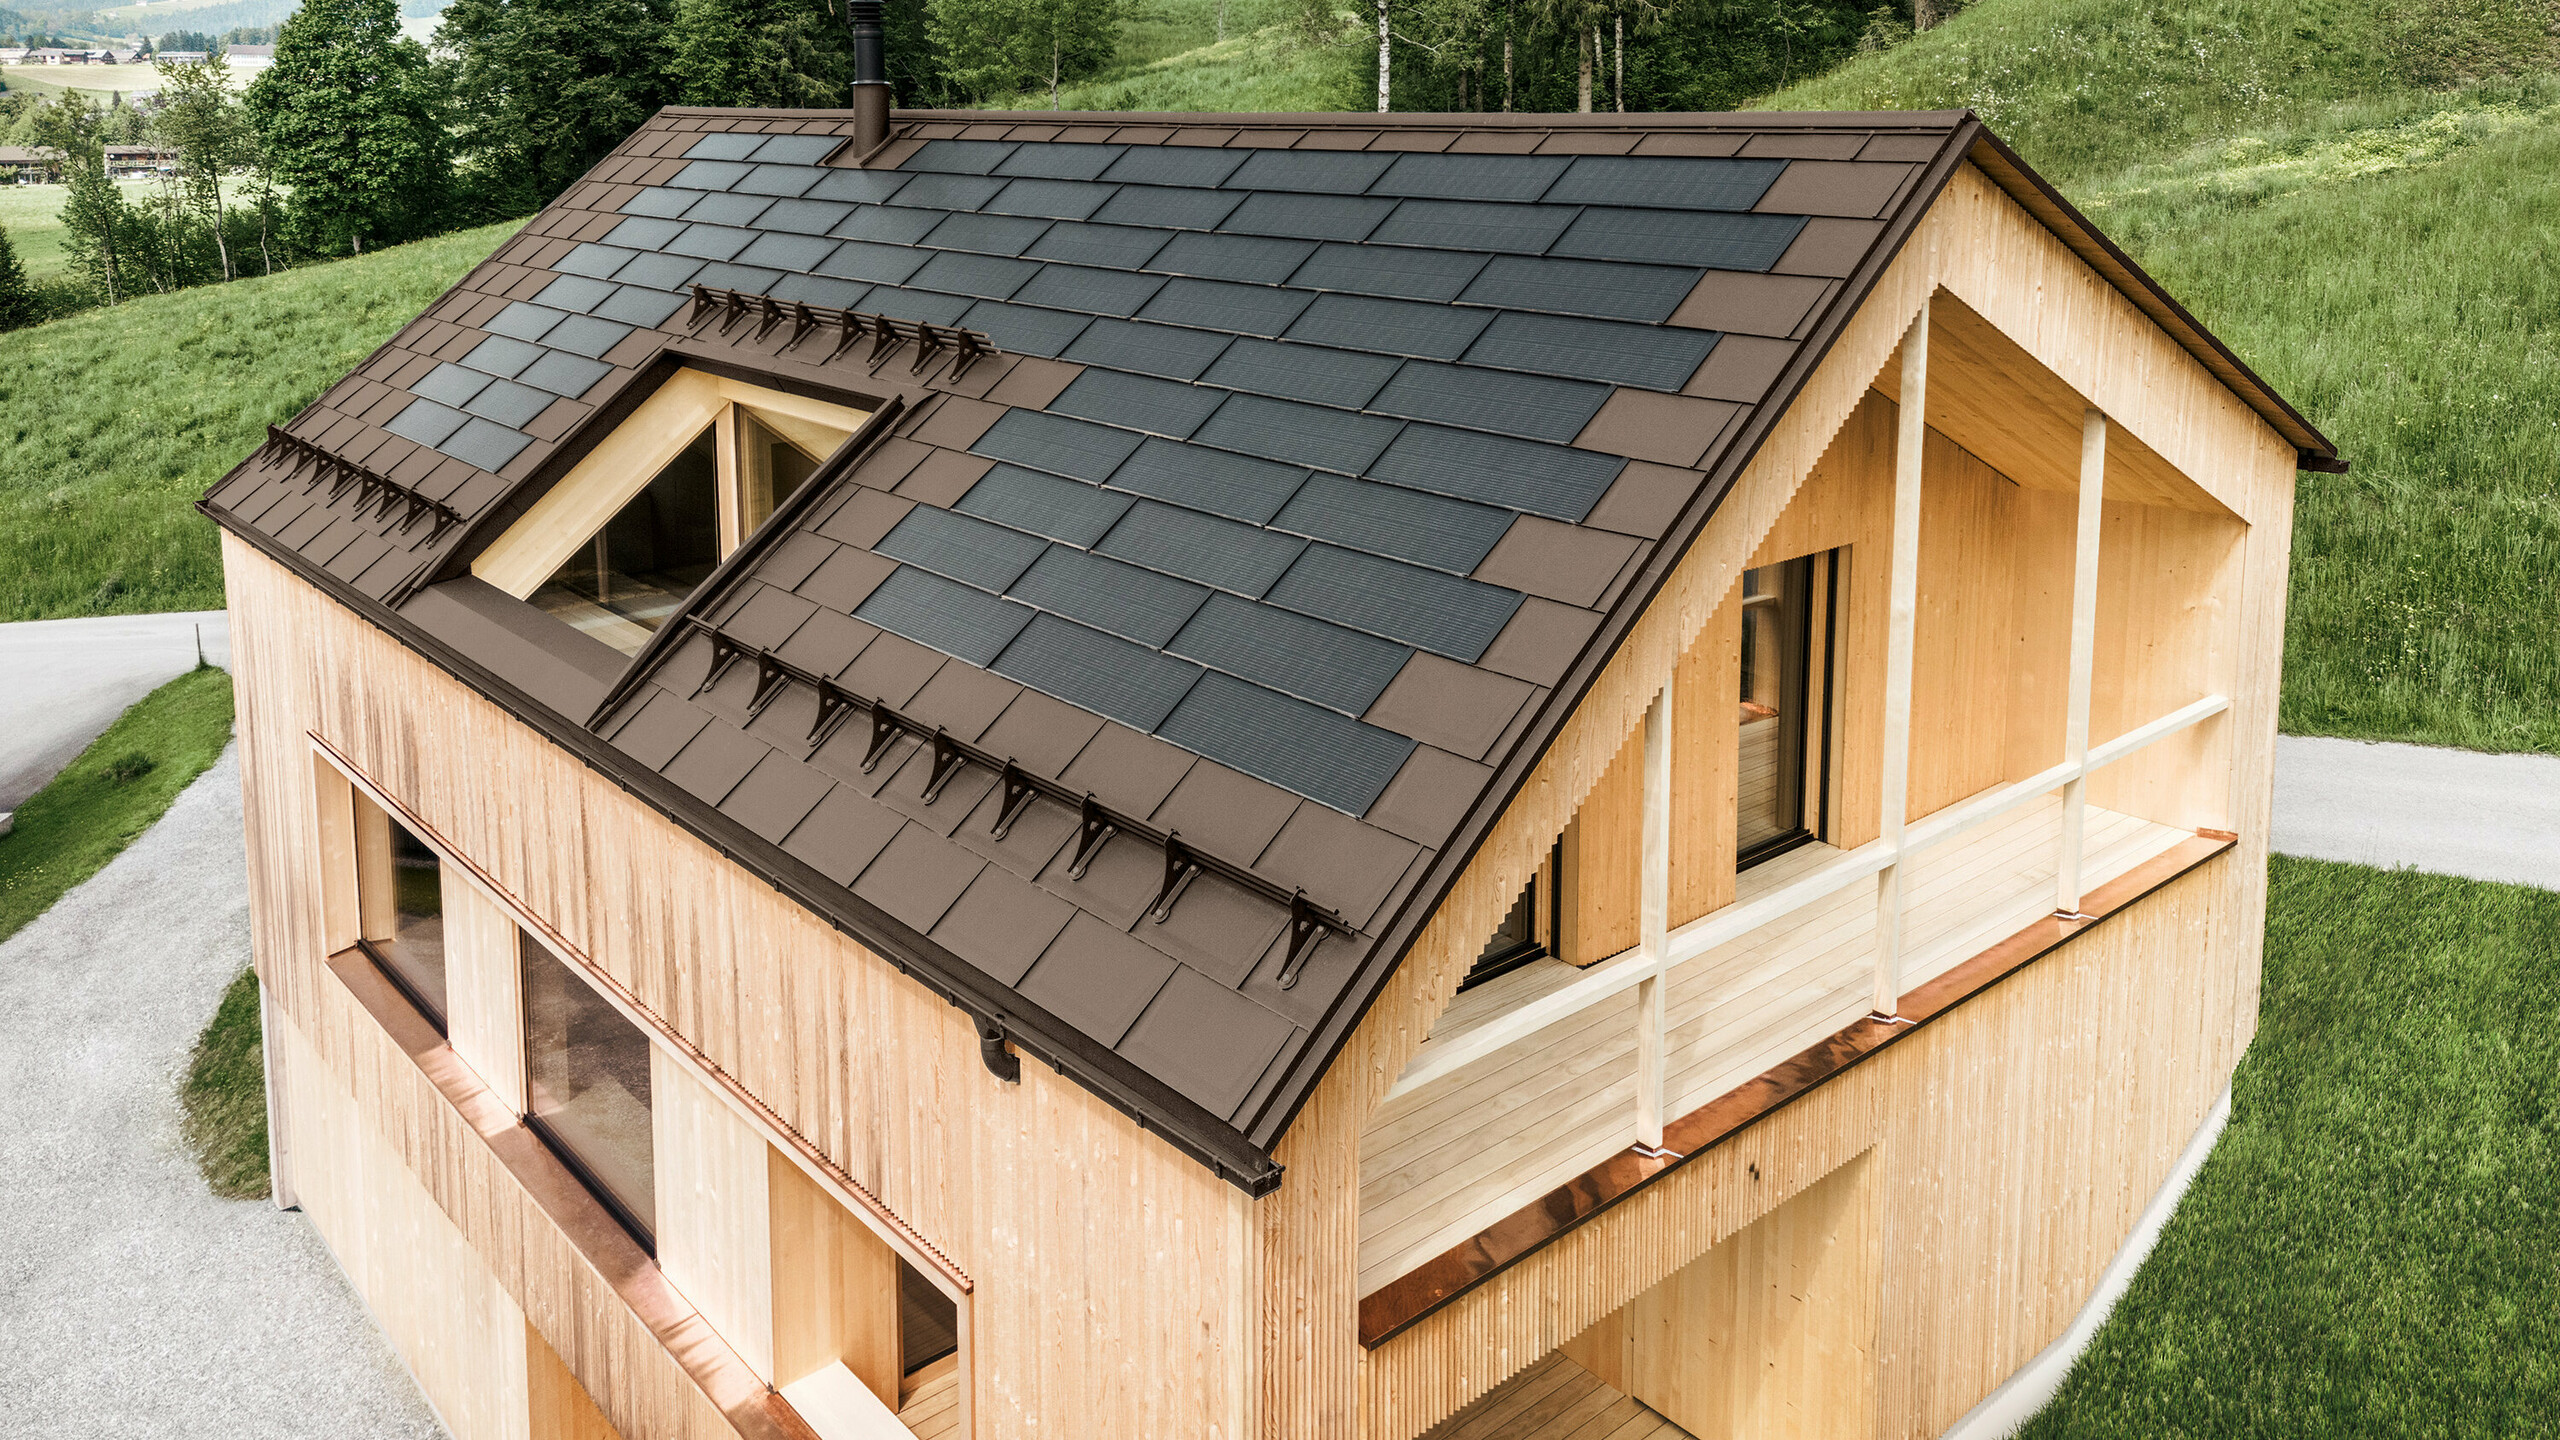 Maison individuelle dans la localité autrichienne d'Egg avec le panneau solaire de toiture PREFA et le panneau de toiture R.16 en brun, combinés à une façade en bois